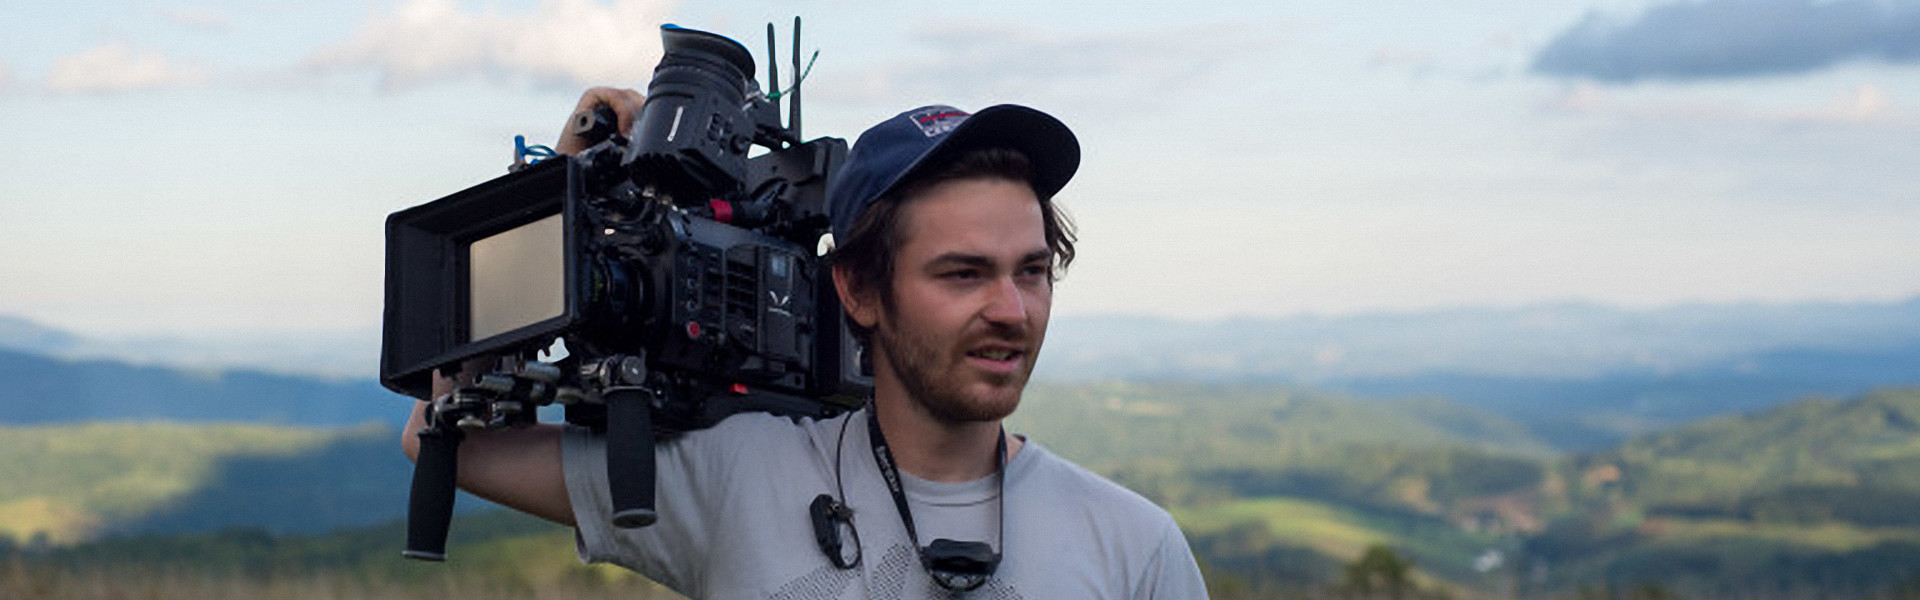 Header image for article Feature, Maine, Winner of AbelCine Film Grant, Shot With VariCam LT 4K Cinema Camcorder